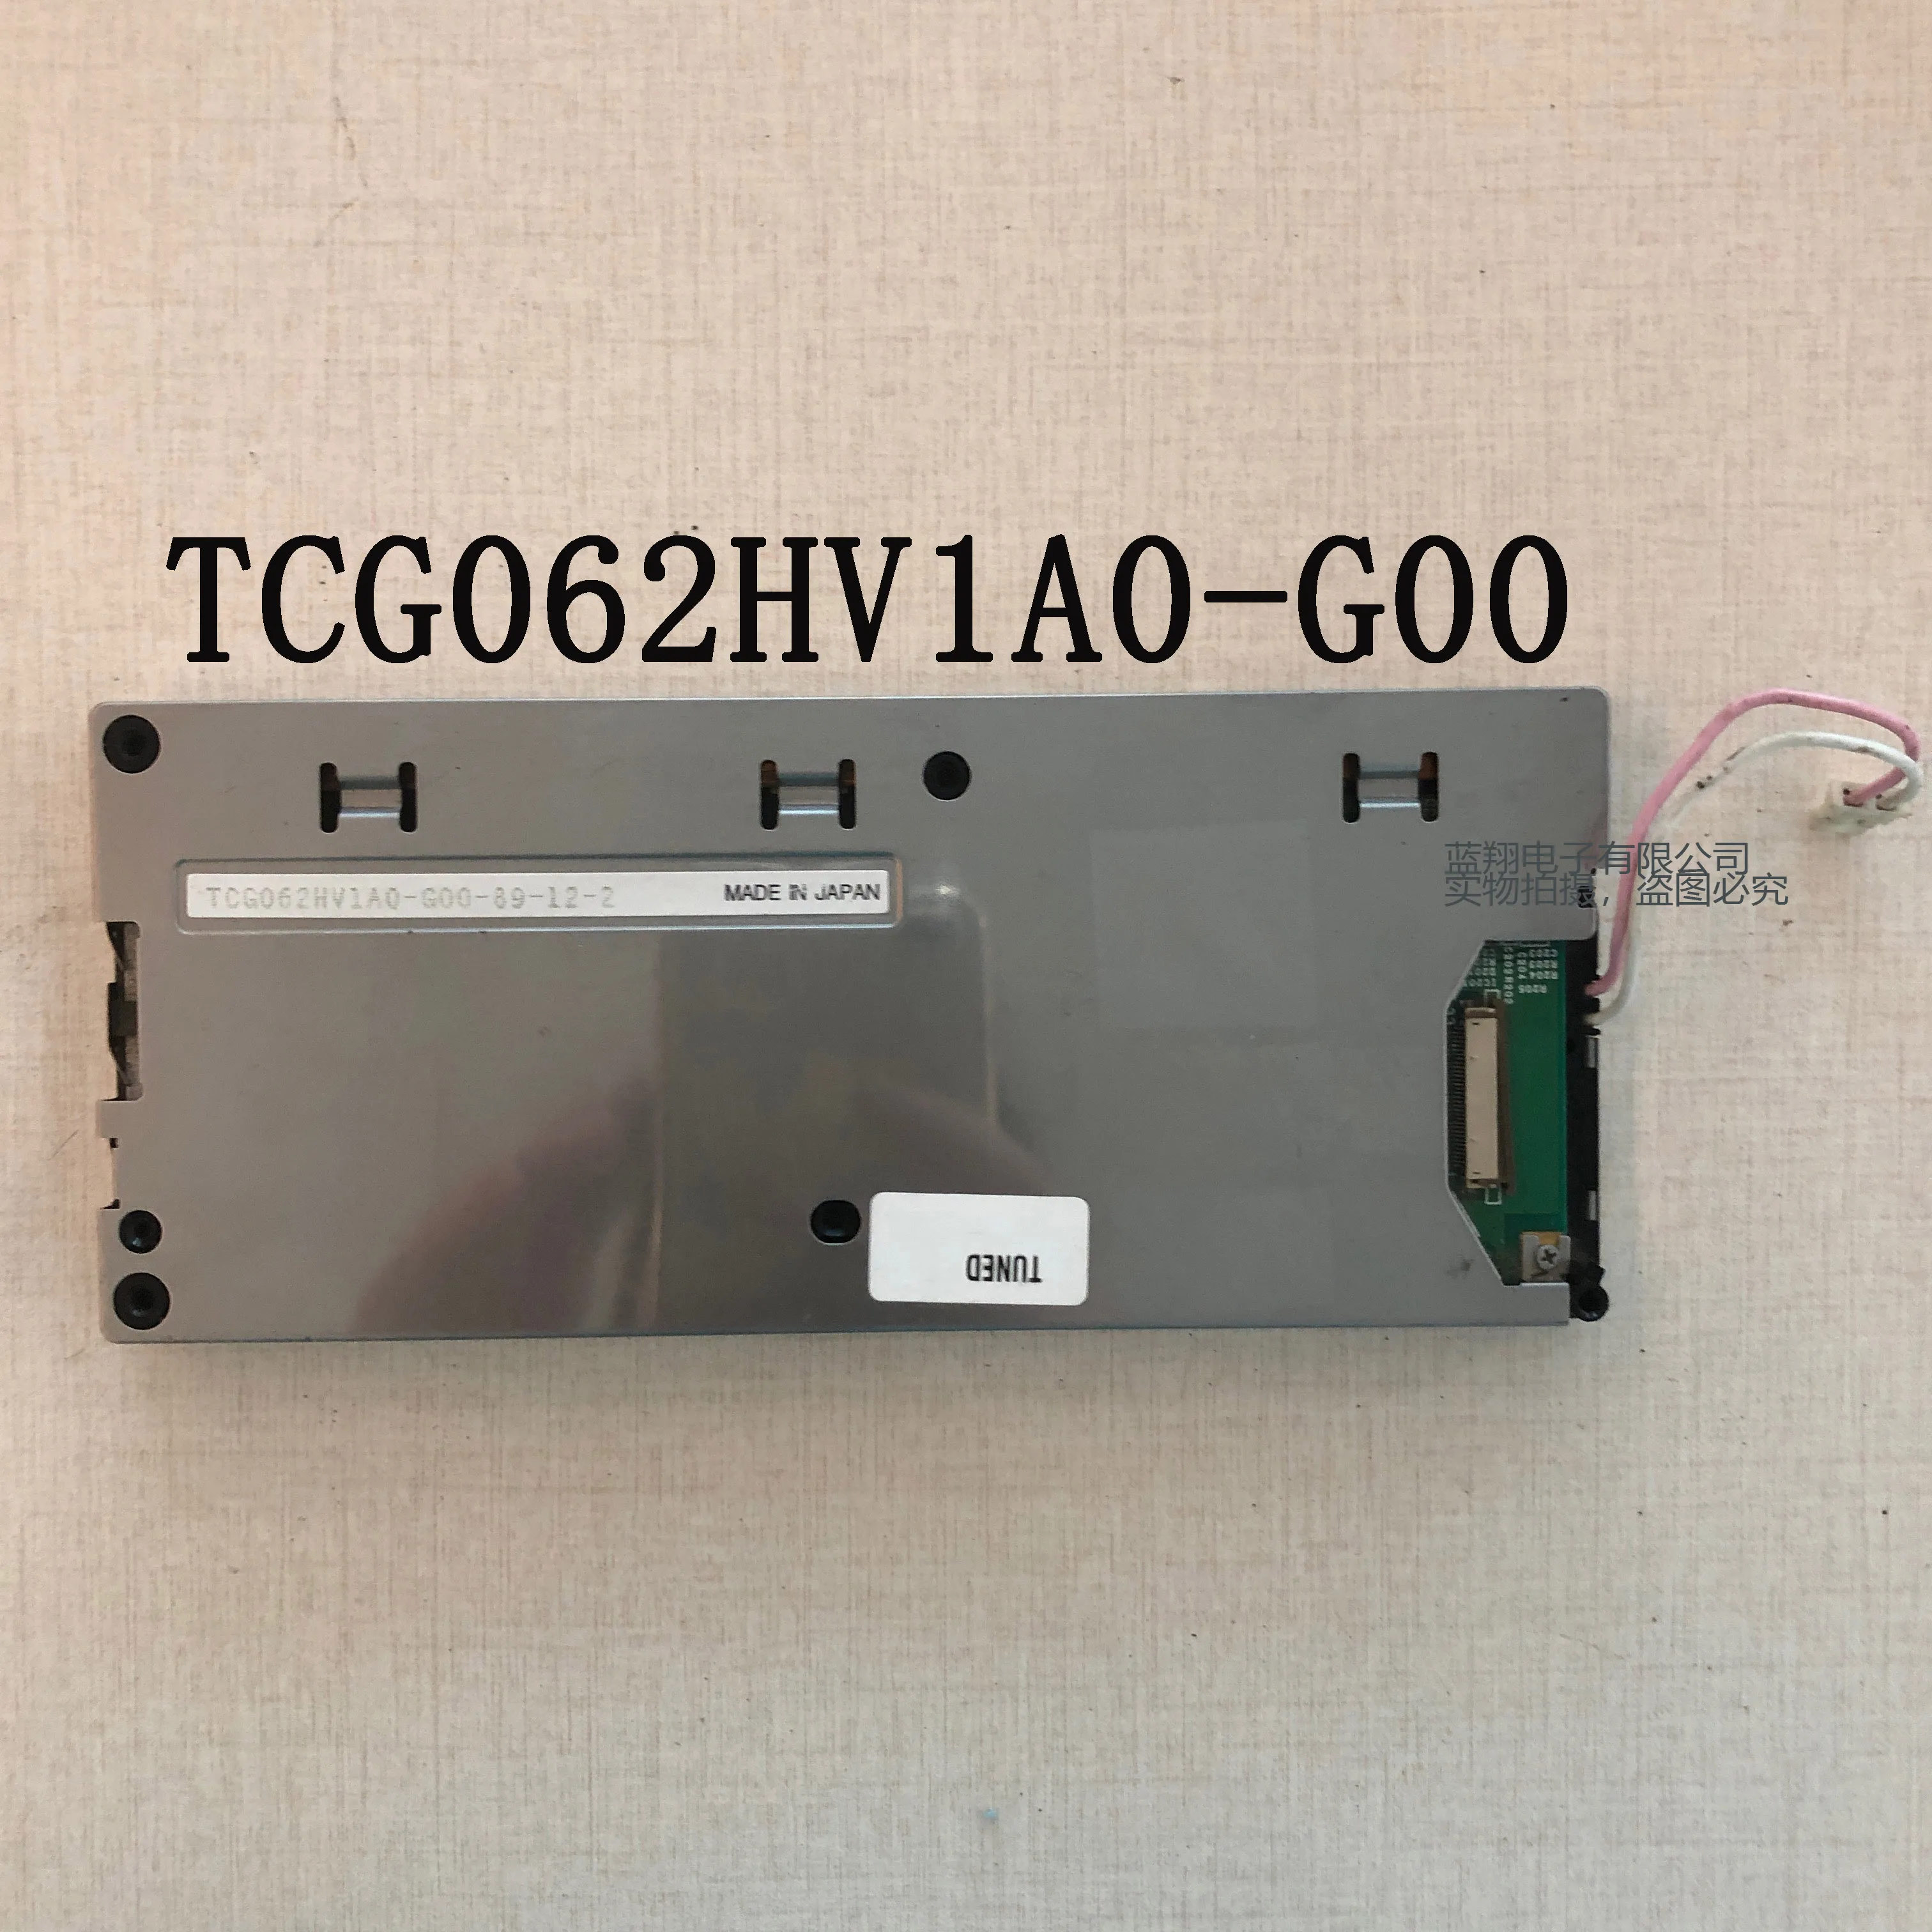 מקורי TCG062HV1A0-G00 מסך LCD - 1